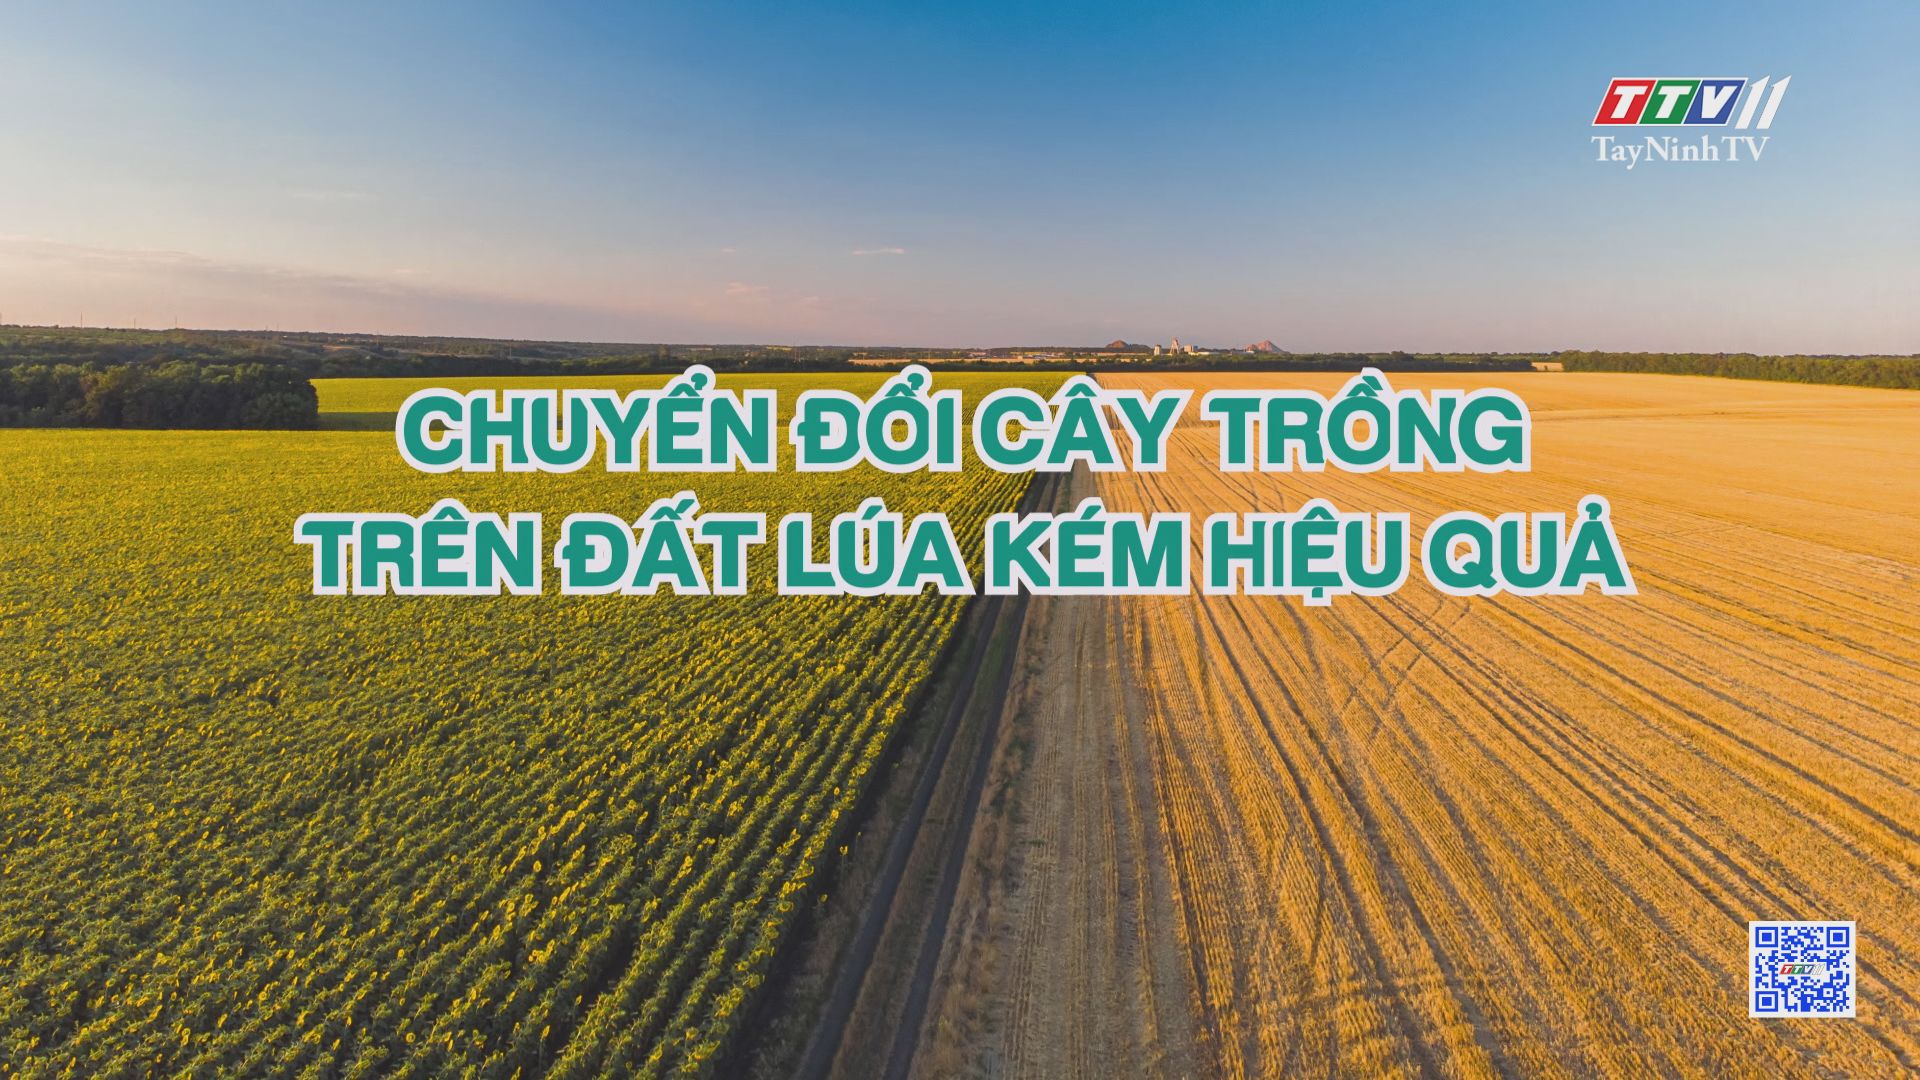 Chuyển đổi cây trồng trên đất lúa kém hiệu quả | Nông nghiệp Tây Ninh | TayNinhTV